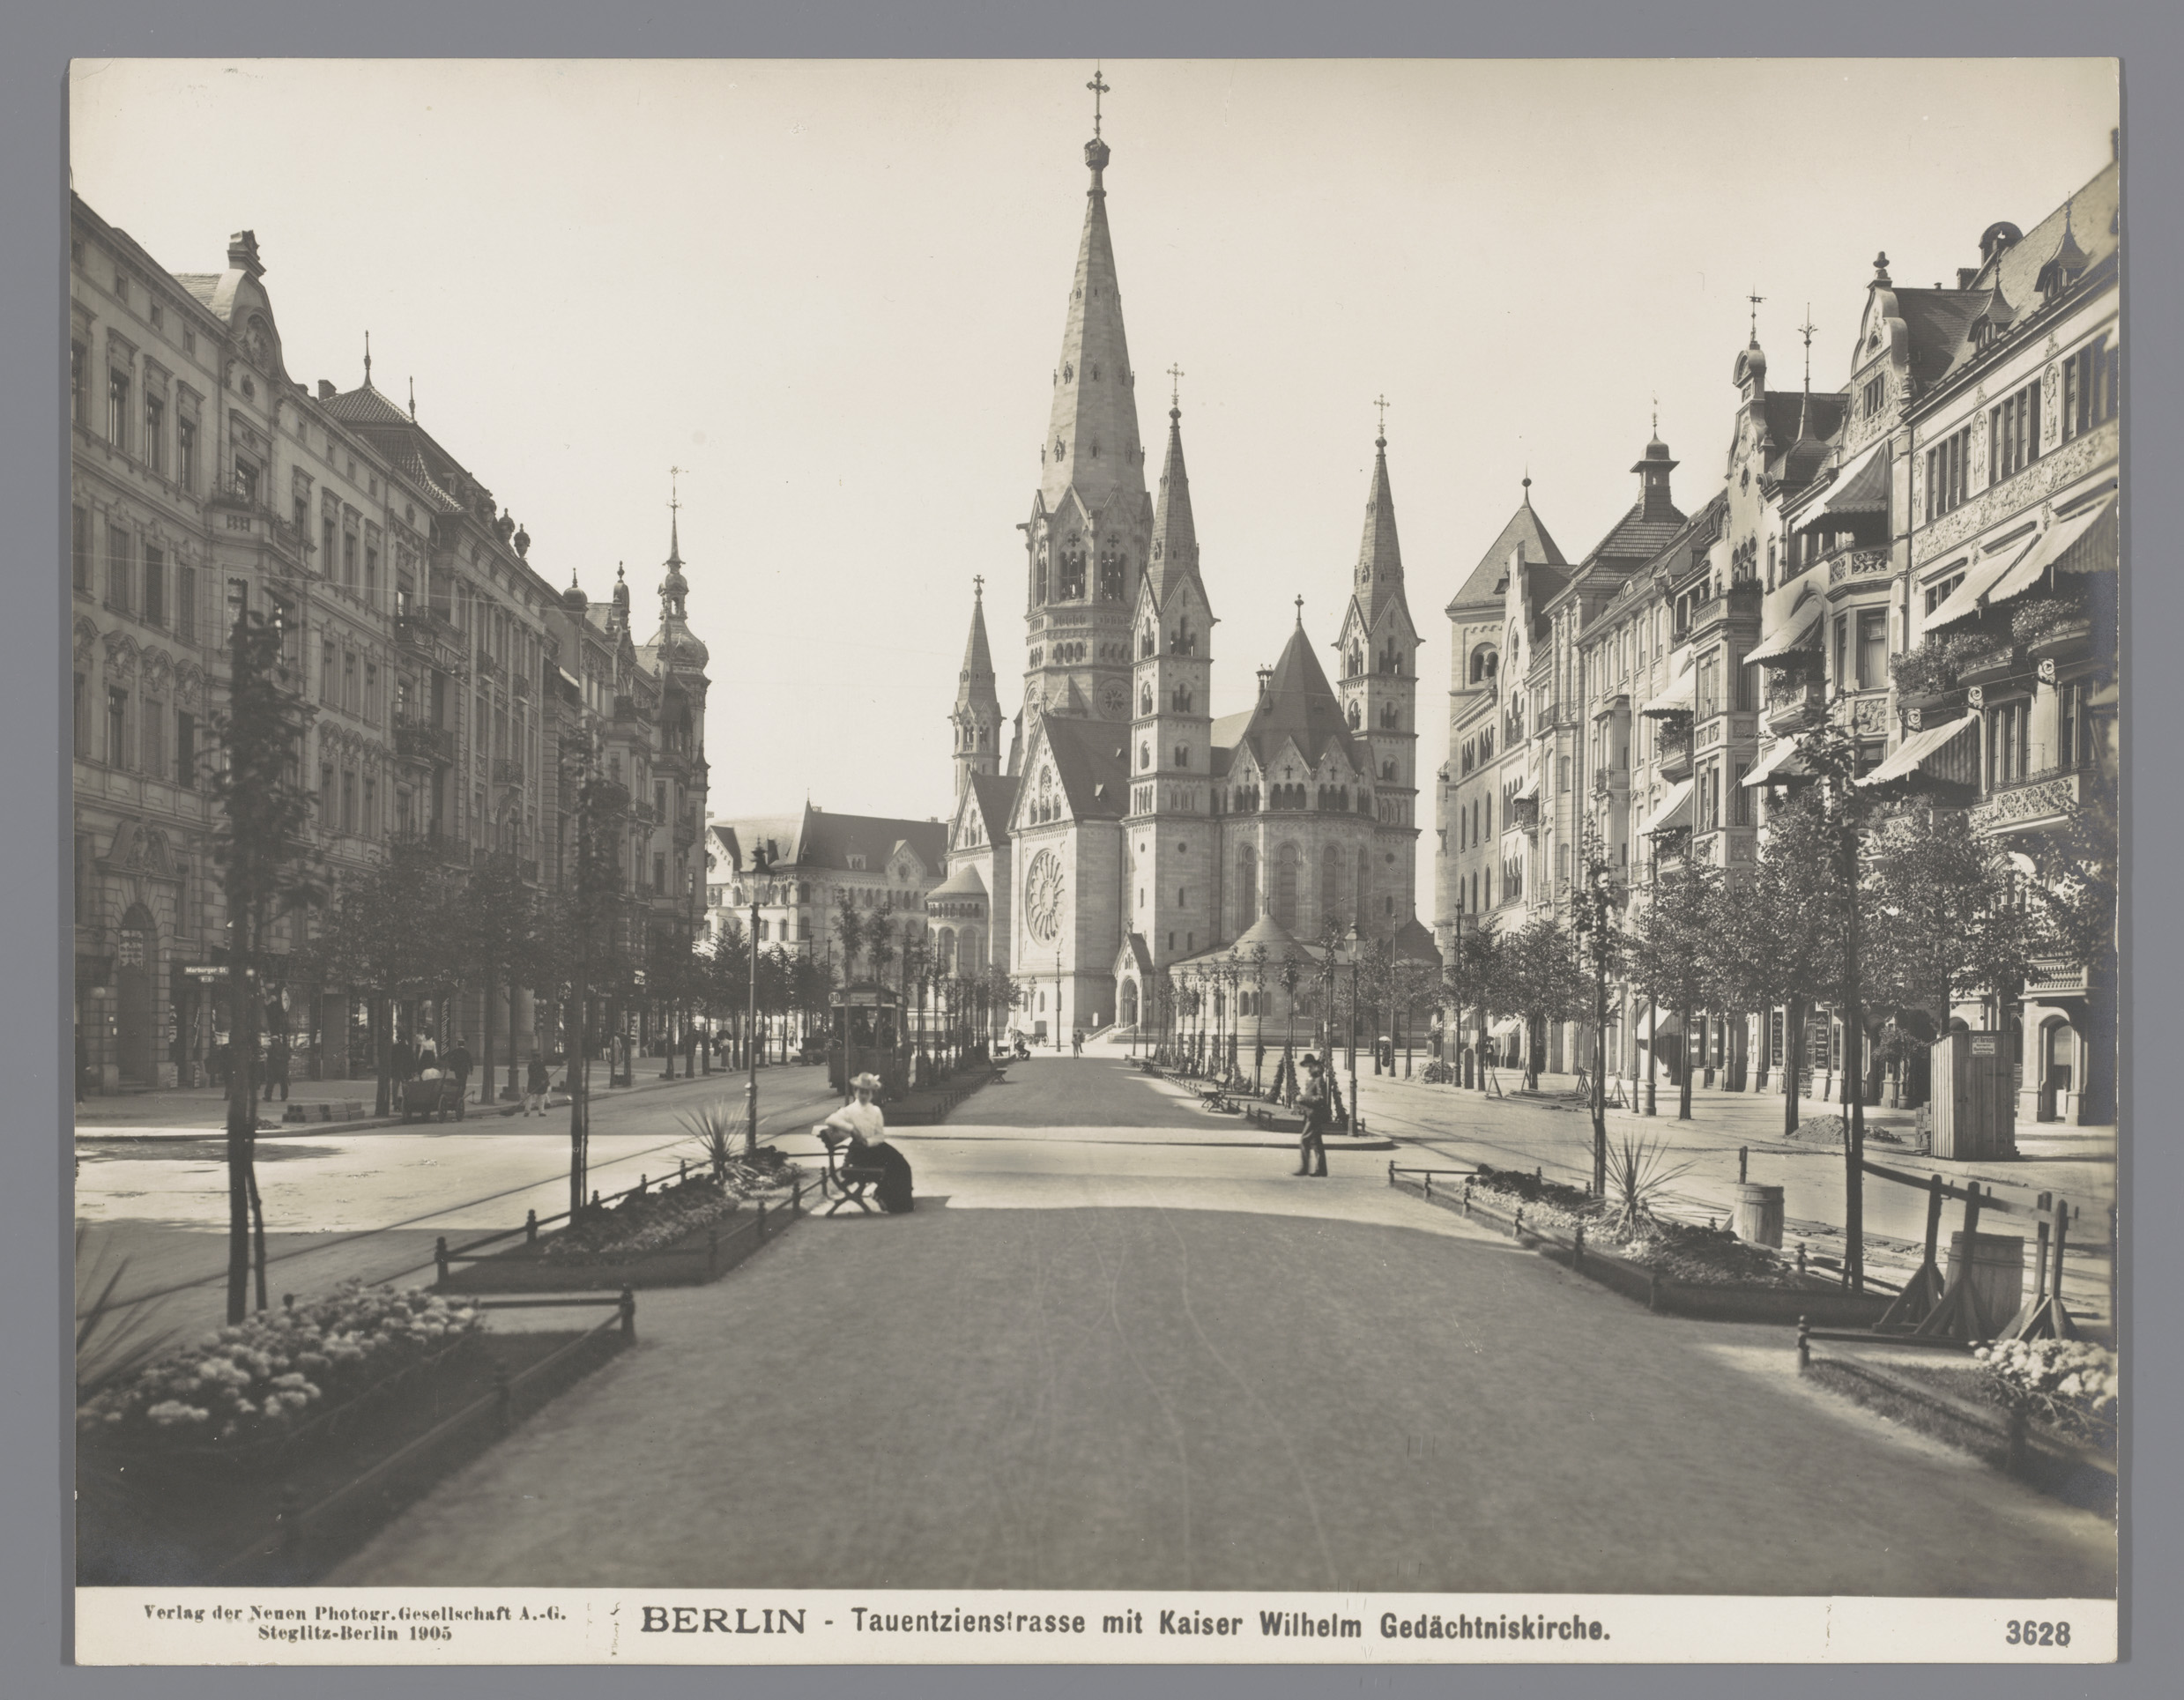 Gezicht in Berlijn met zicht op de Gymnastic Church, Berlin, Tauentzientrasse with Emperor Wilhelm Memory Church